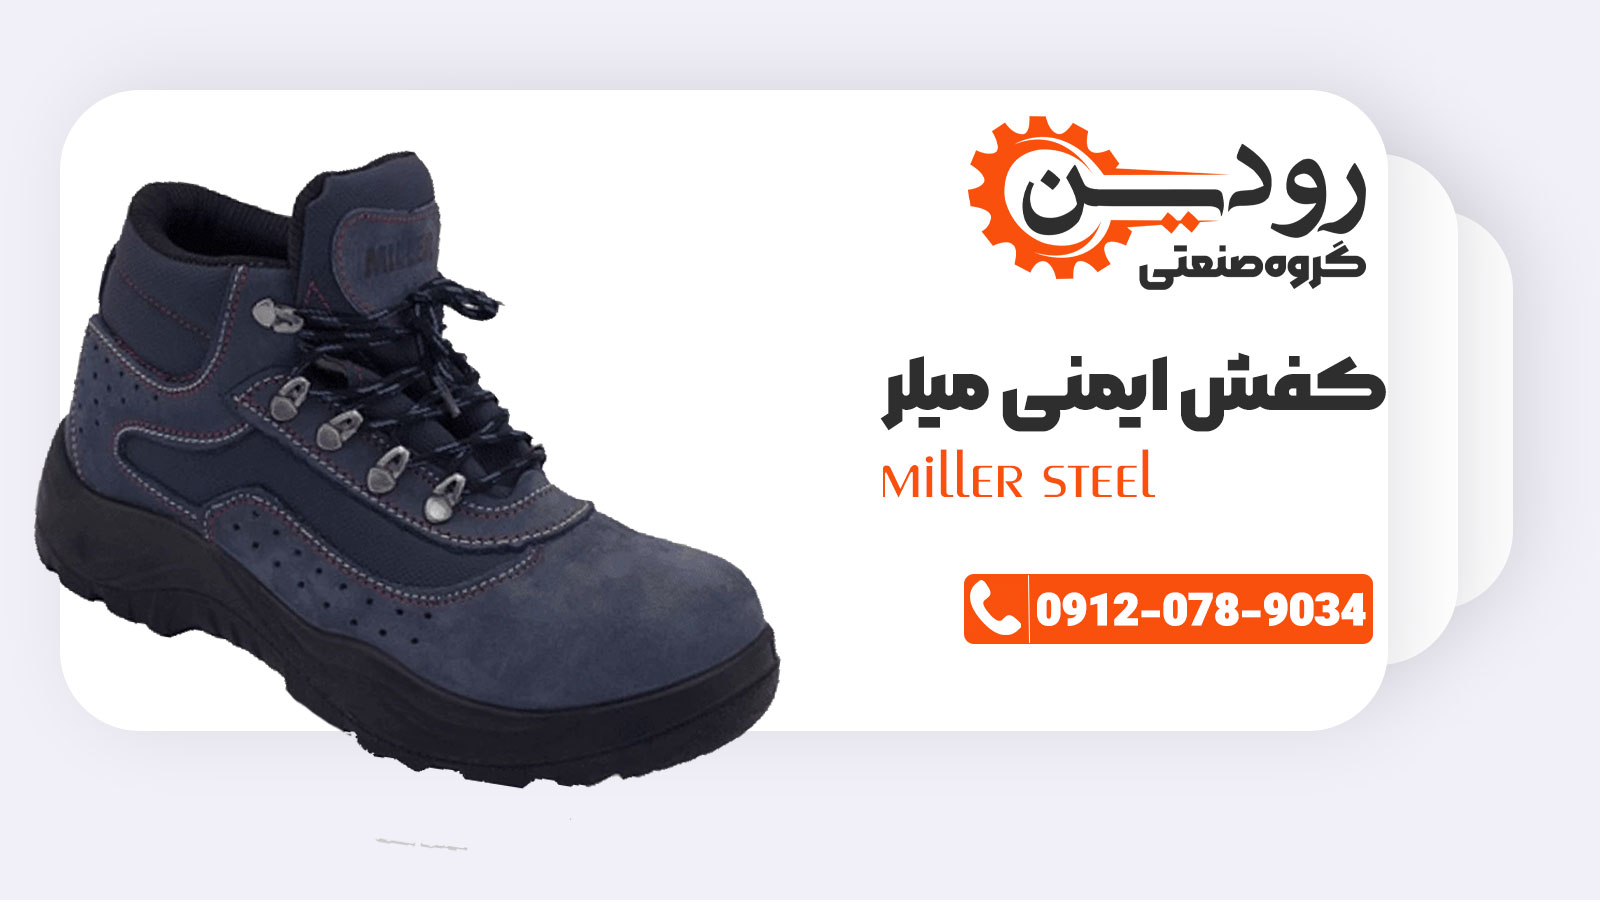 فروش کفش ایمنی میلر با بهترین قیمت ممکن در بازار کشور ایران